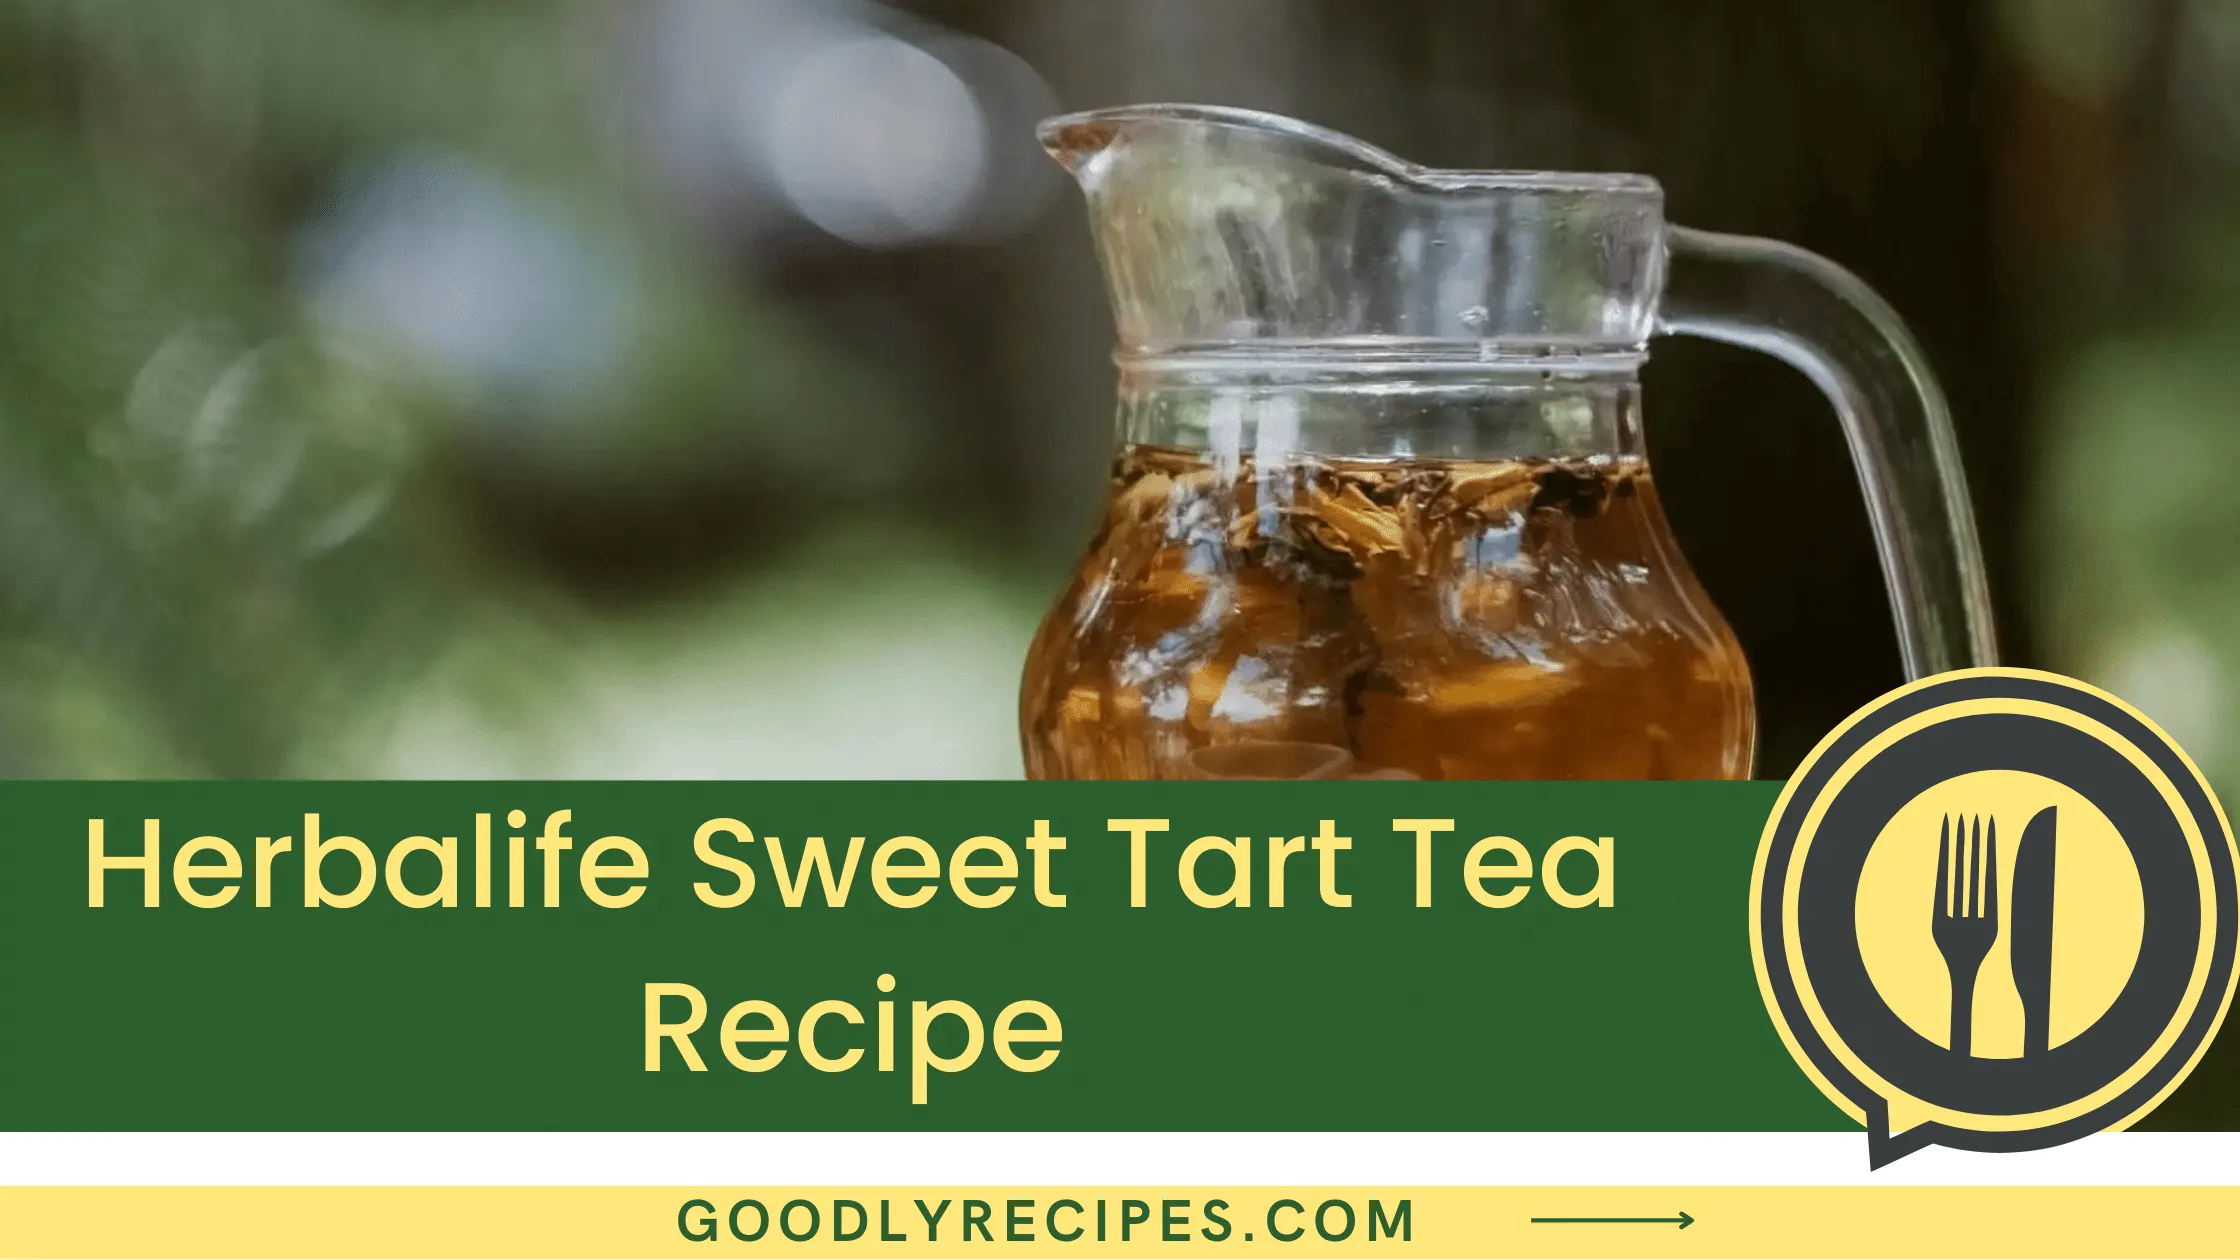 Herbalife Sweet Tart Tea Recipe - For Food Lovers